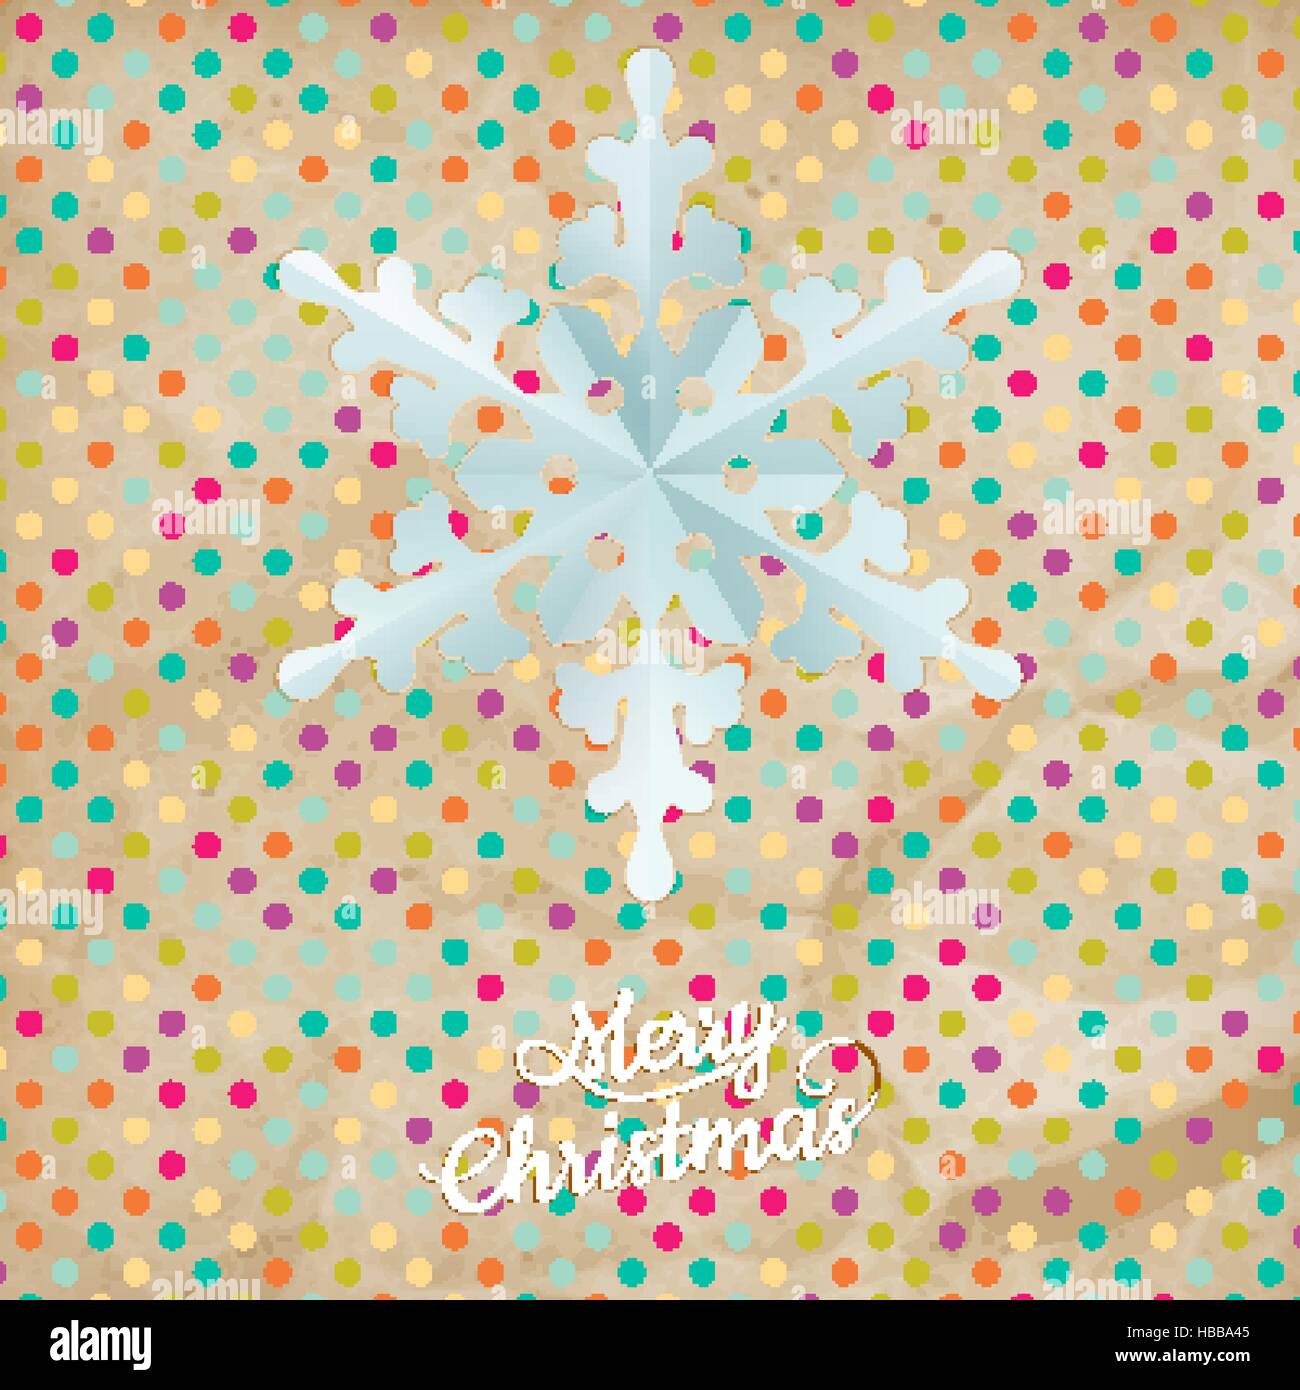 Christmas polka dot card with snowflake. EPS 10 Stock Vector